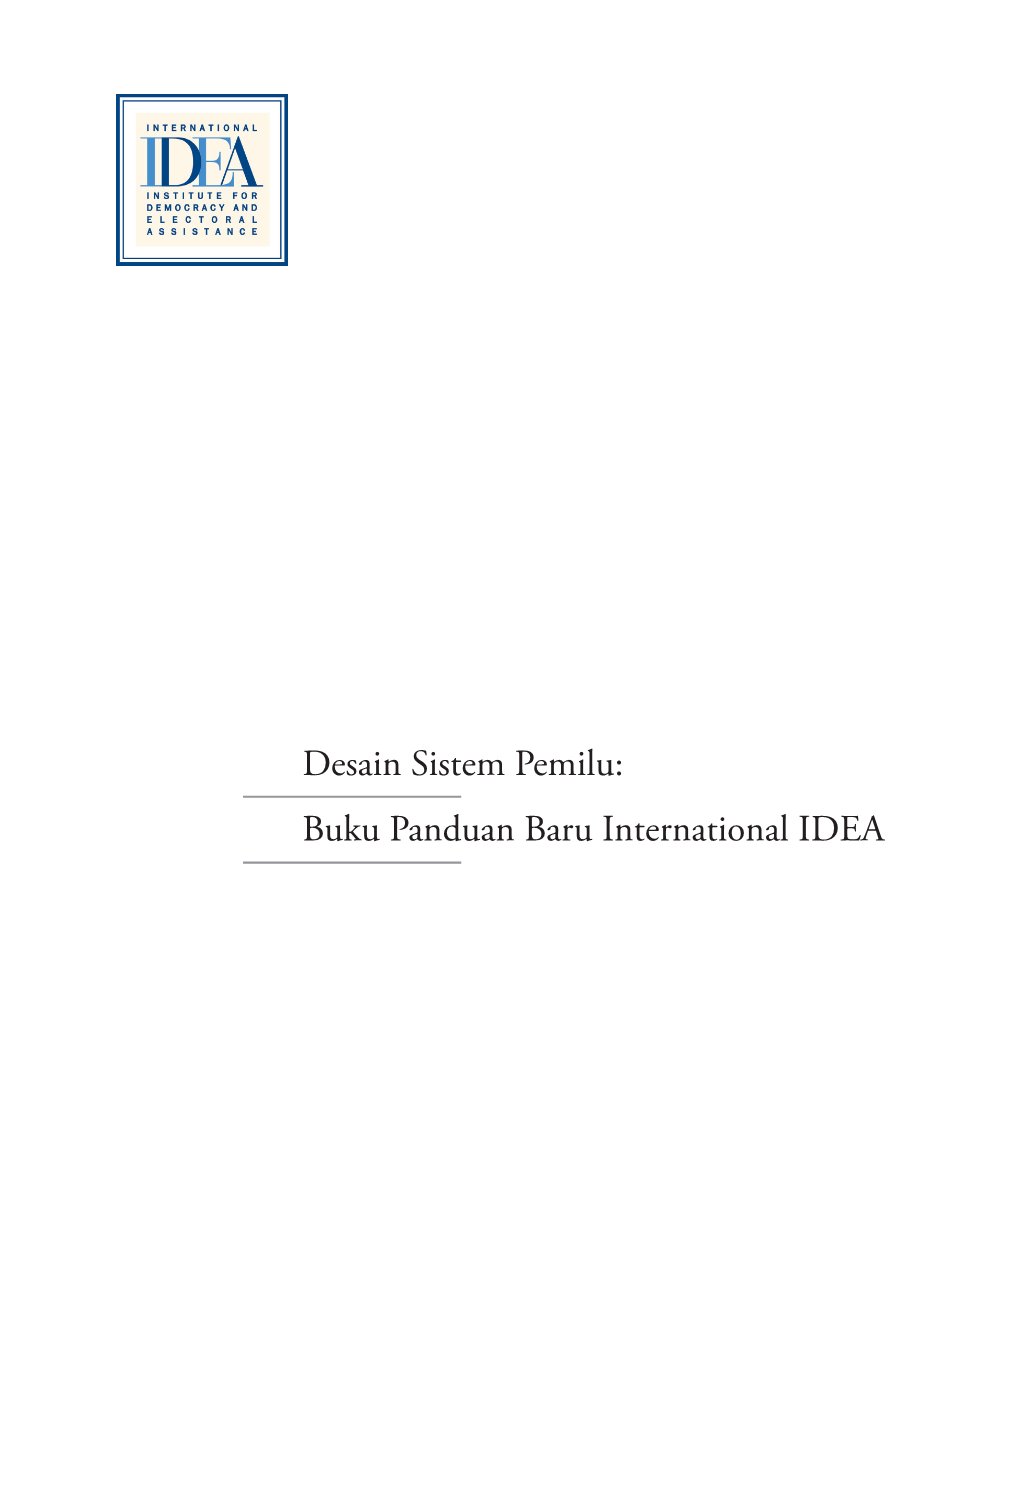 Desain Sistem Pemilu: Buku Panduan Baru International IDEA